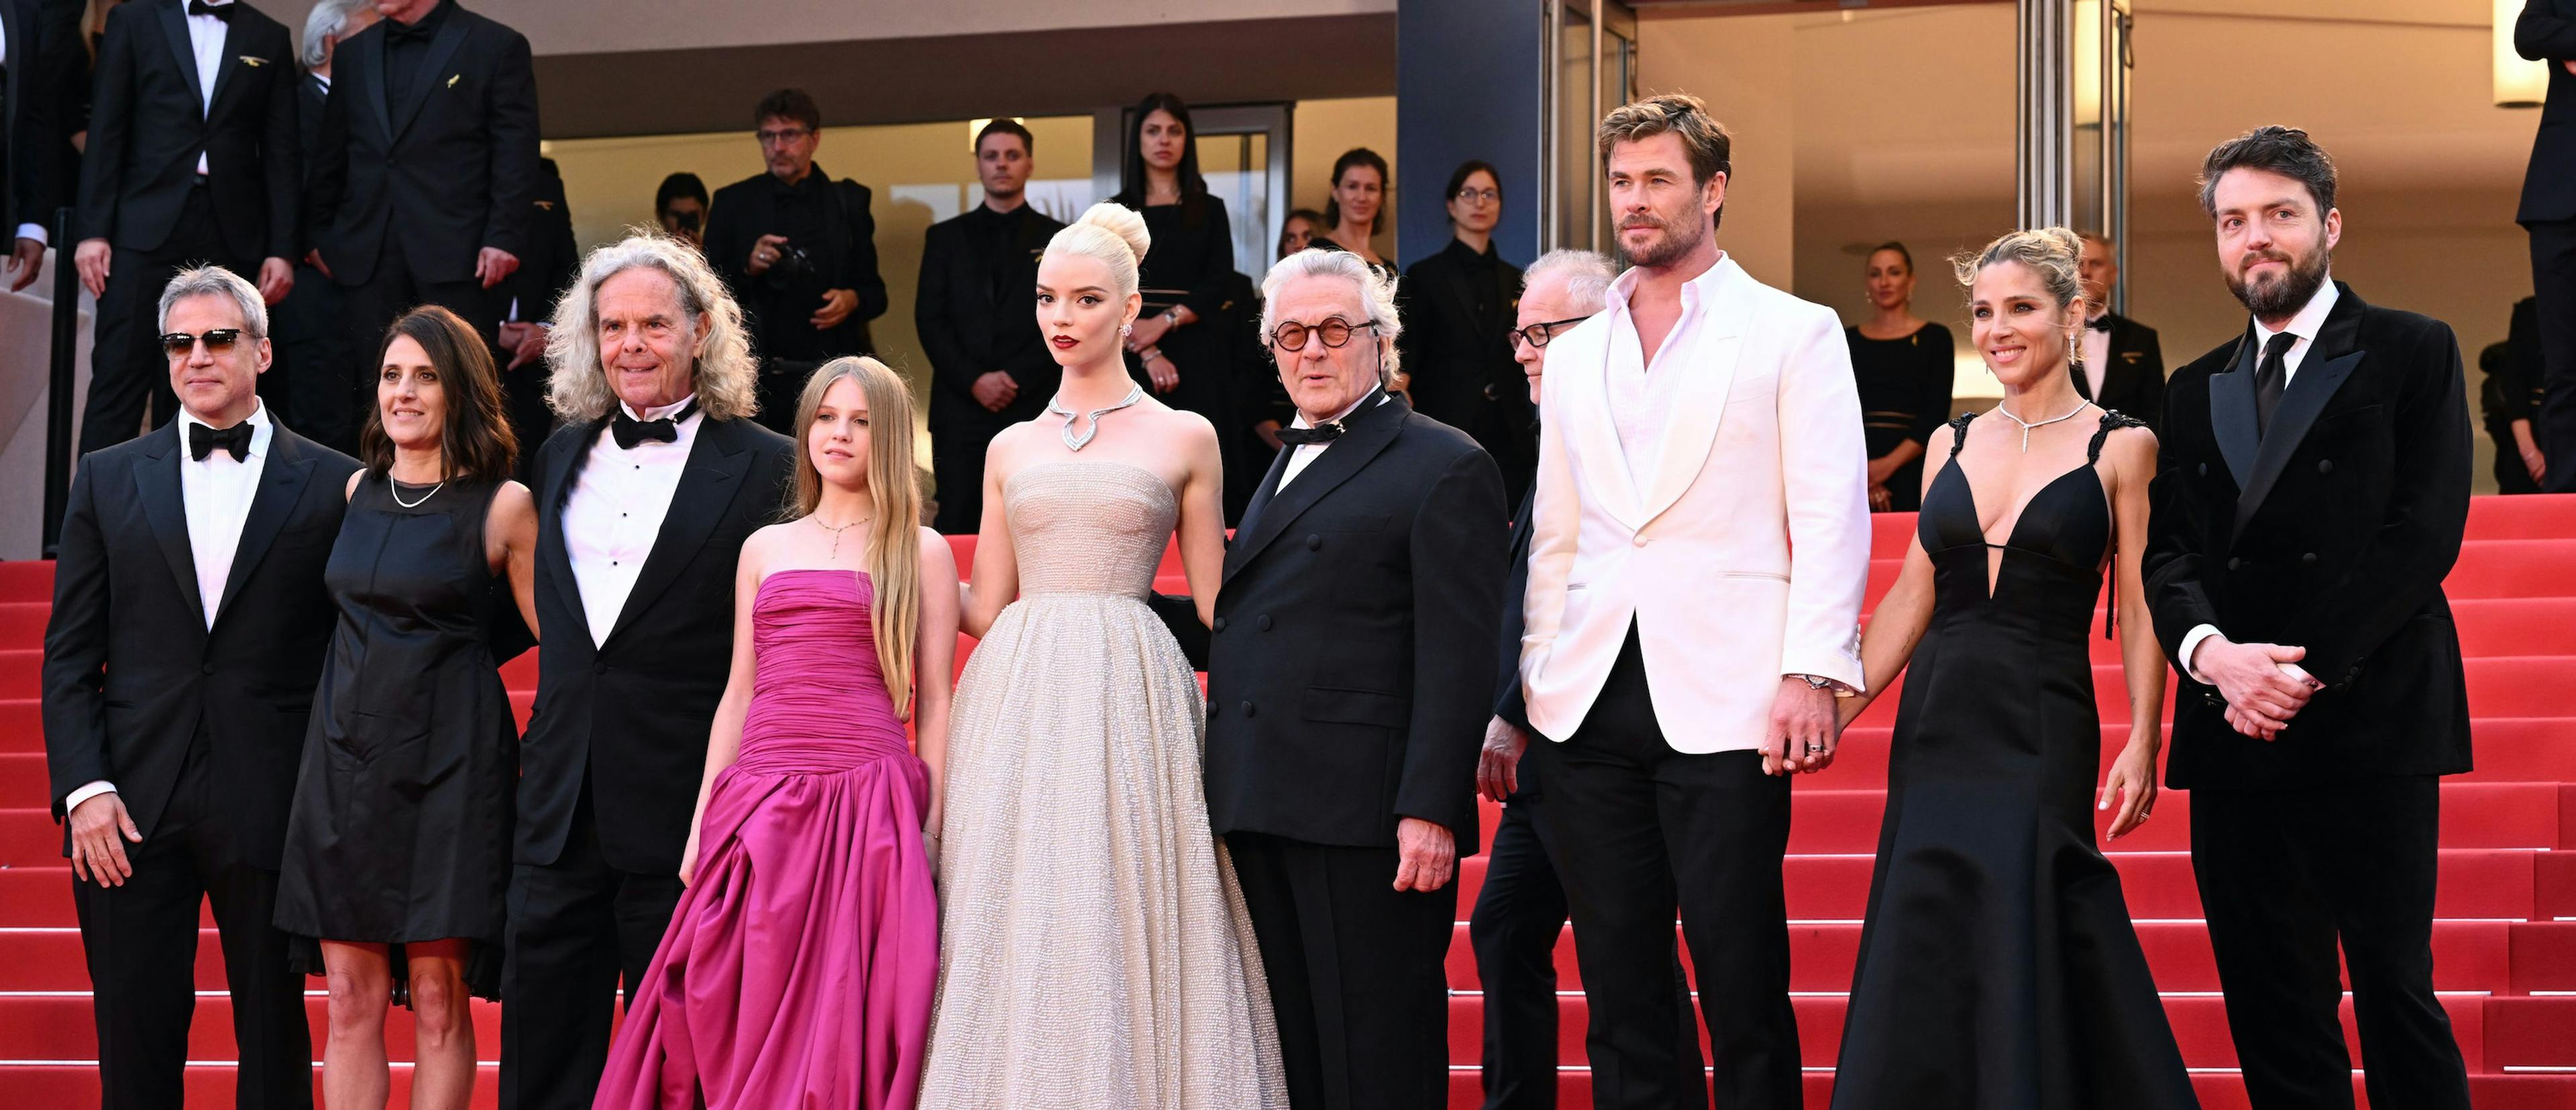 El equipo artístico de 'Furiosa', de la saga Mad Max, en la escalinata del Festival de Cannes